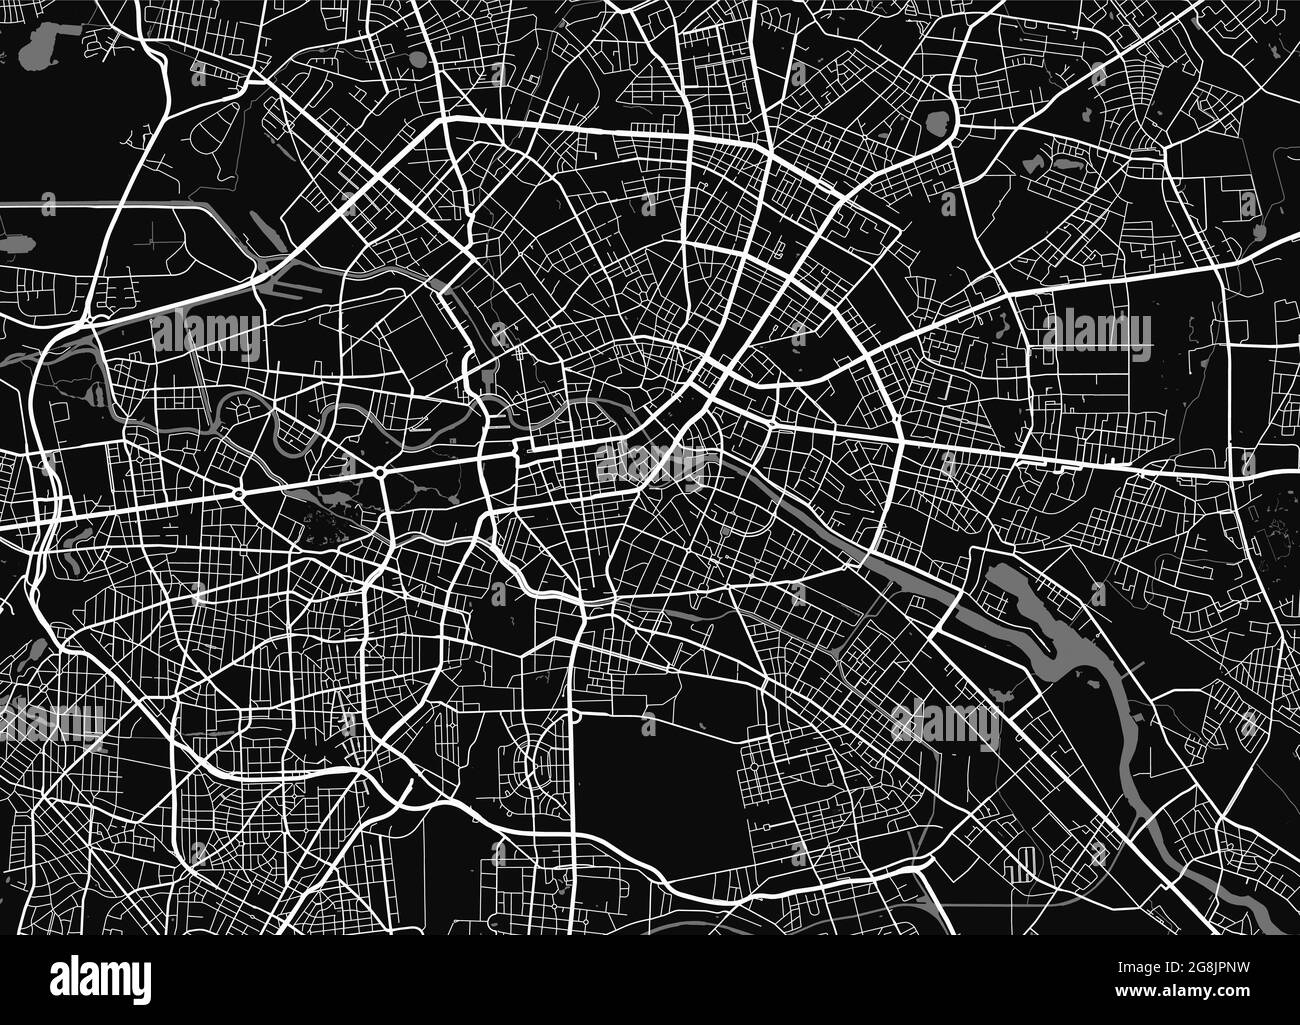 Mapa urbano de Berlín. Ilustración vectorial, póster artístico en escala de grises del mapa de Berlín. Imagen del mapa de calles con carreteras, vista del área metropolitana de la ciudad. Ilustración del Vector